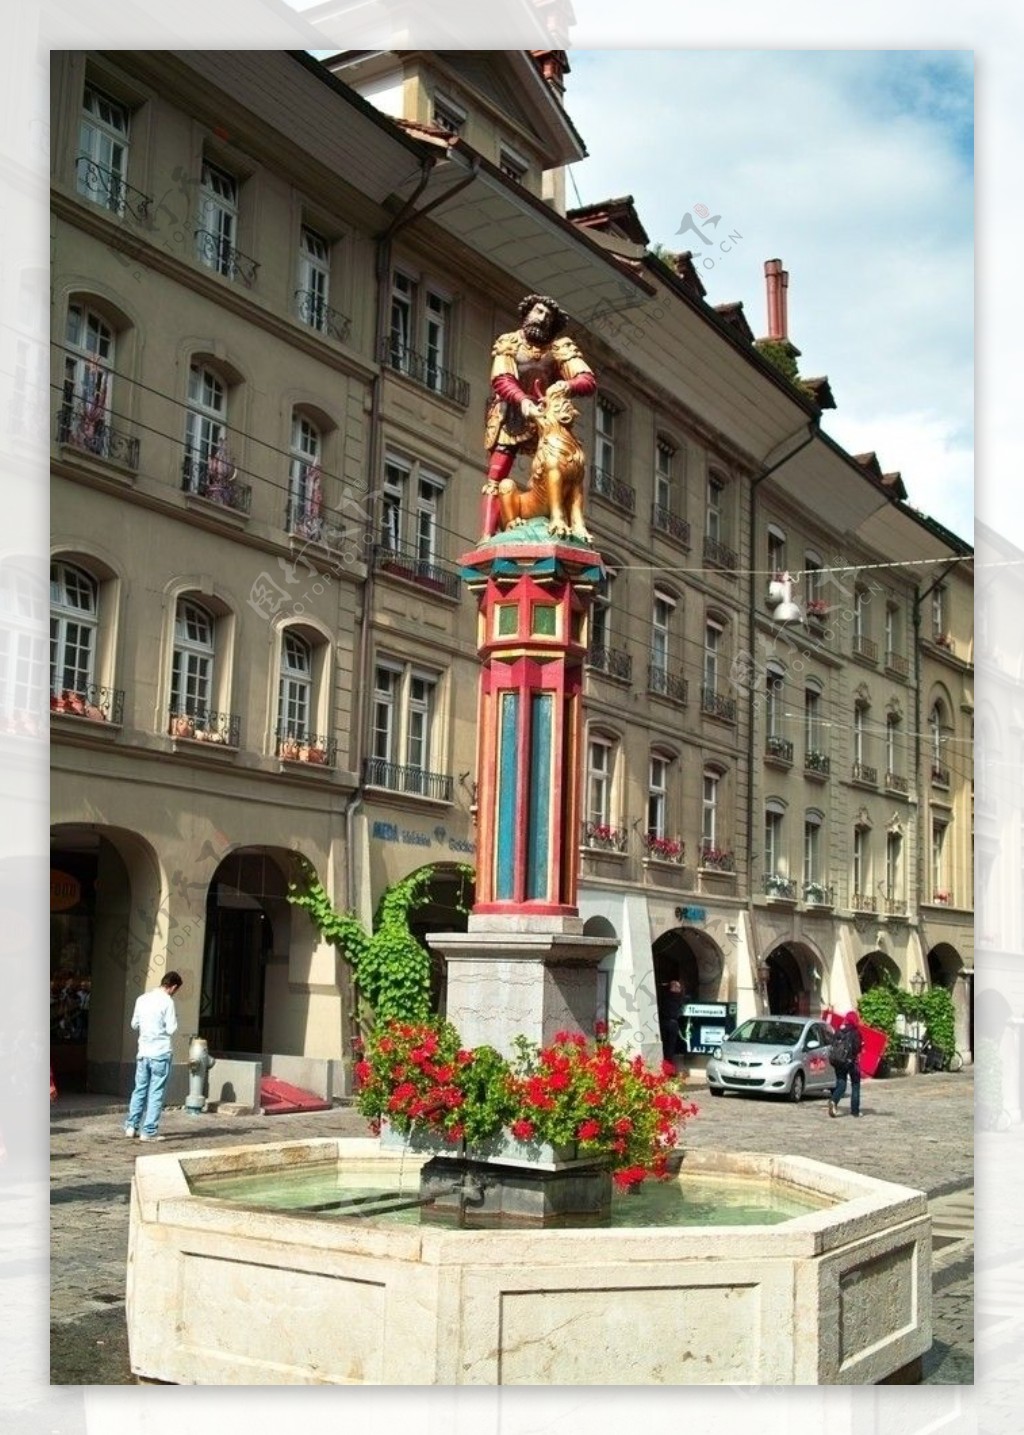 瑞士伯爾尼街景图片